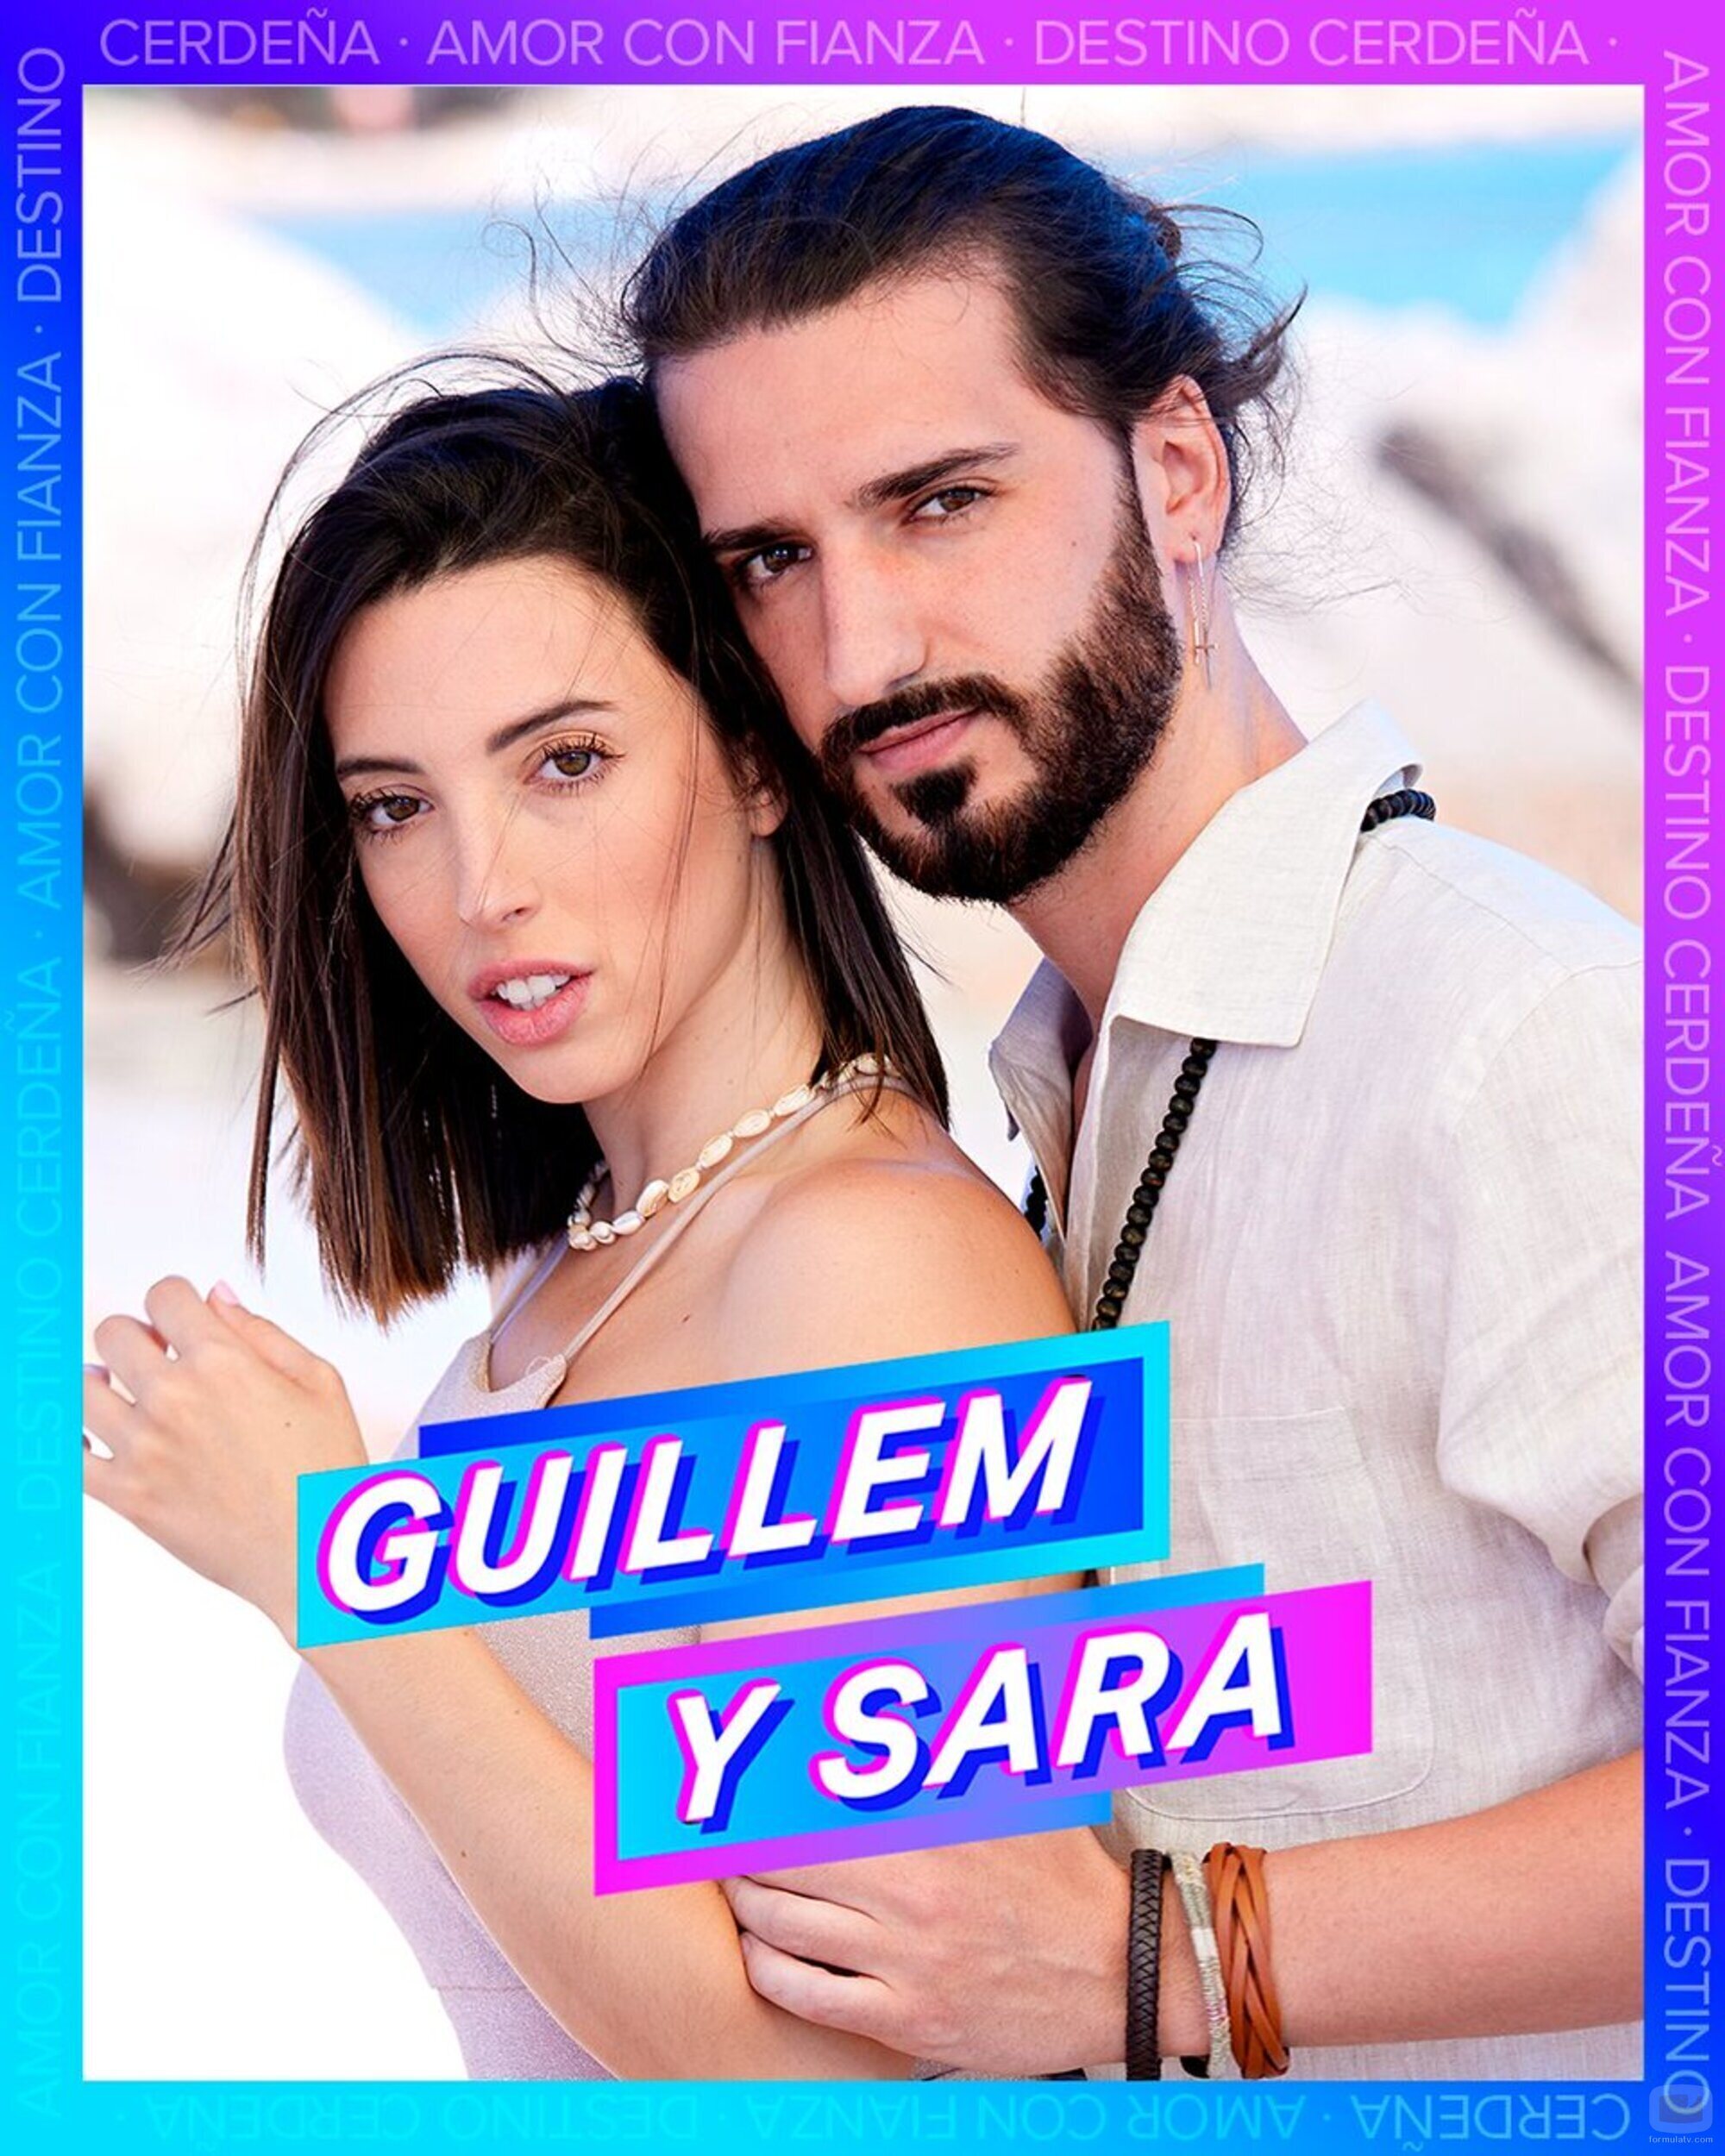 Guillem y Sara, concursantes de 'Amor con fianza 2'